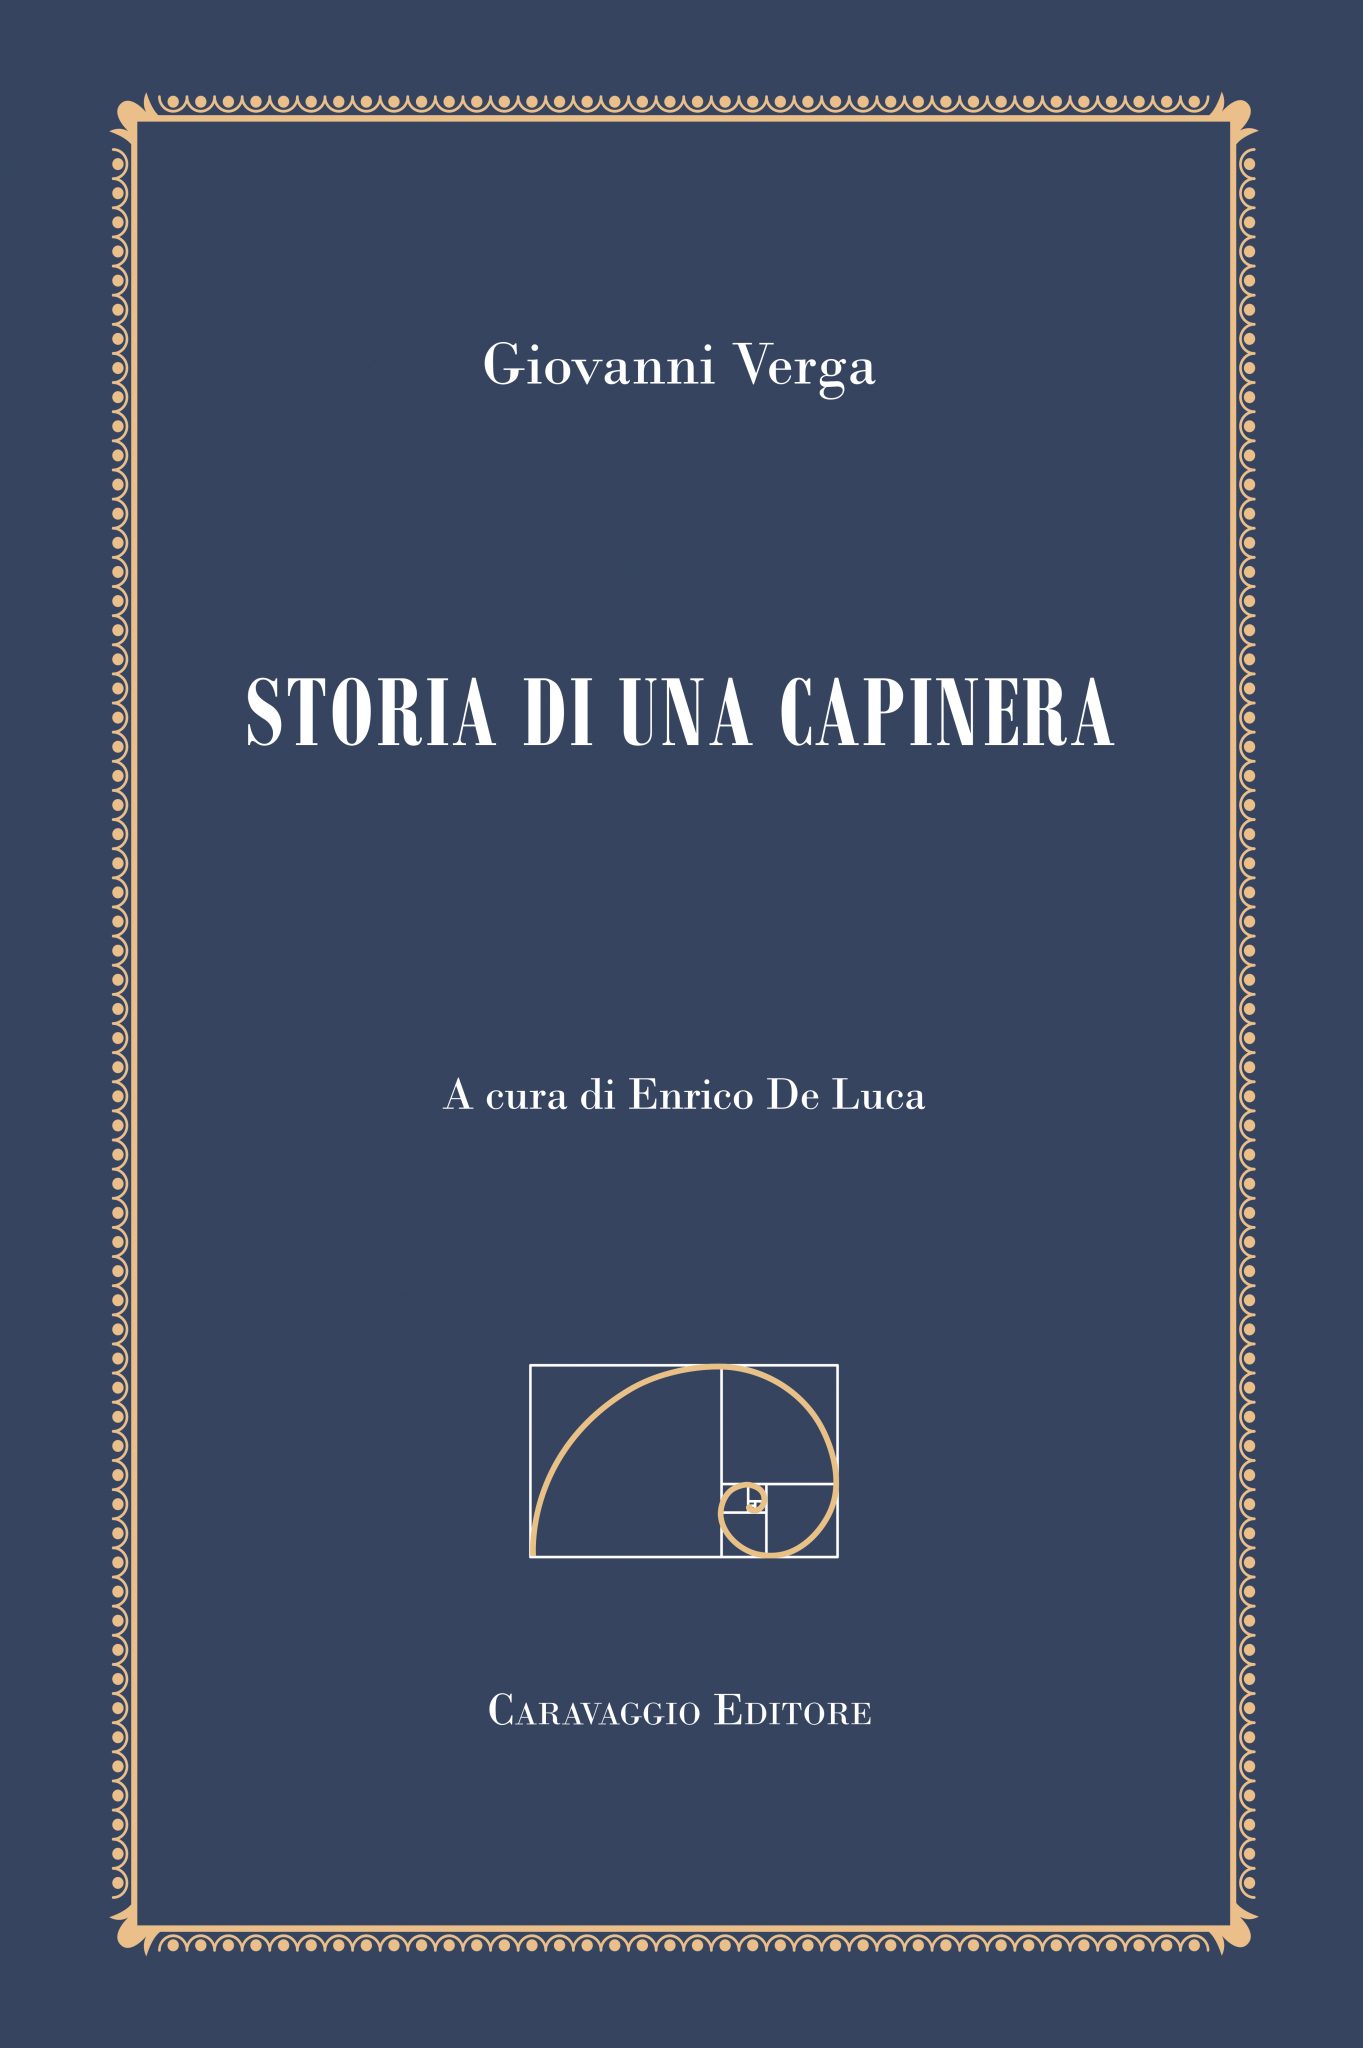 Giovanni Verga # STORIA DI UNA CAPINERA # Madella 1913